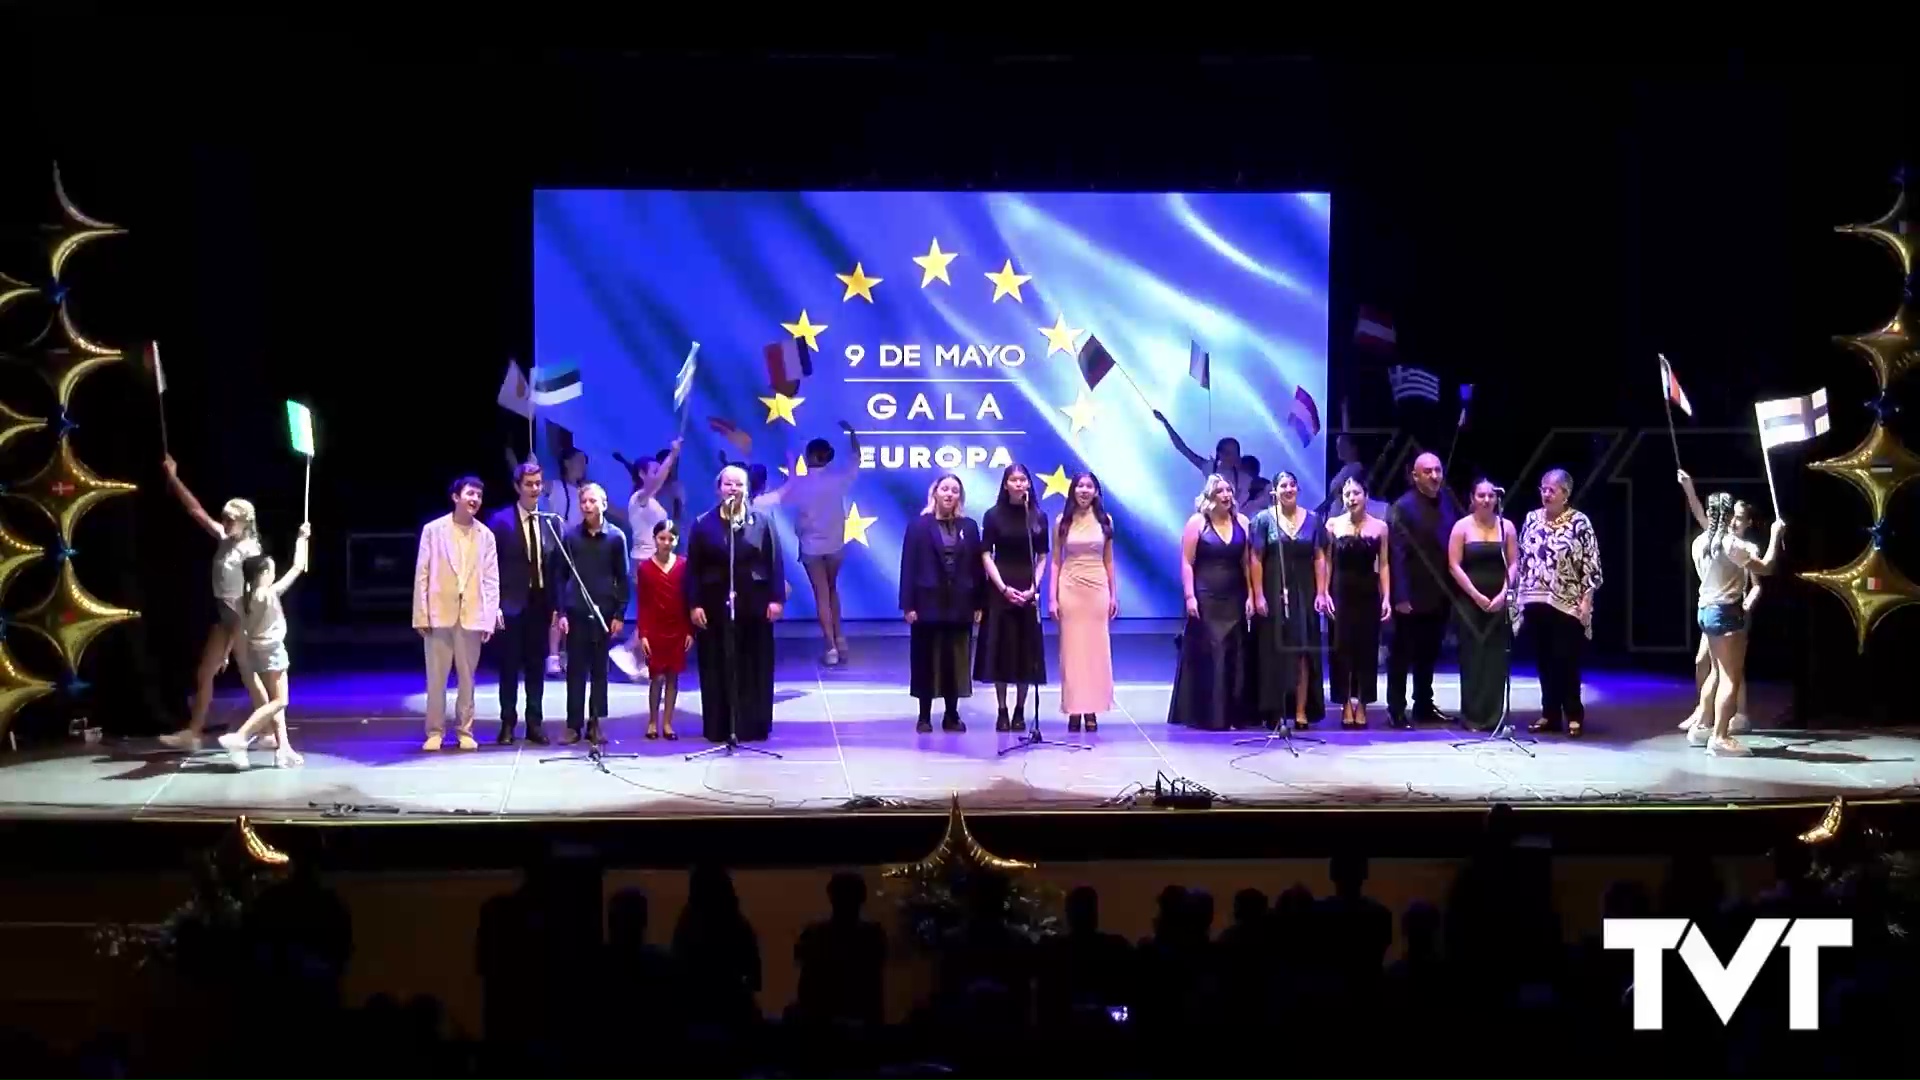 Imagen de Un Auditorio repleto para disfrutar del talento local, nacional e internacional en conmemoración del Día de Europa 